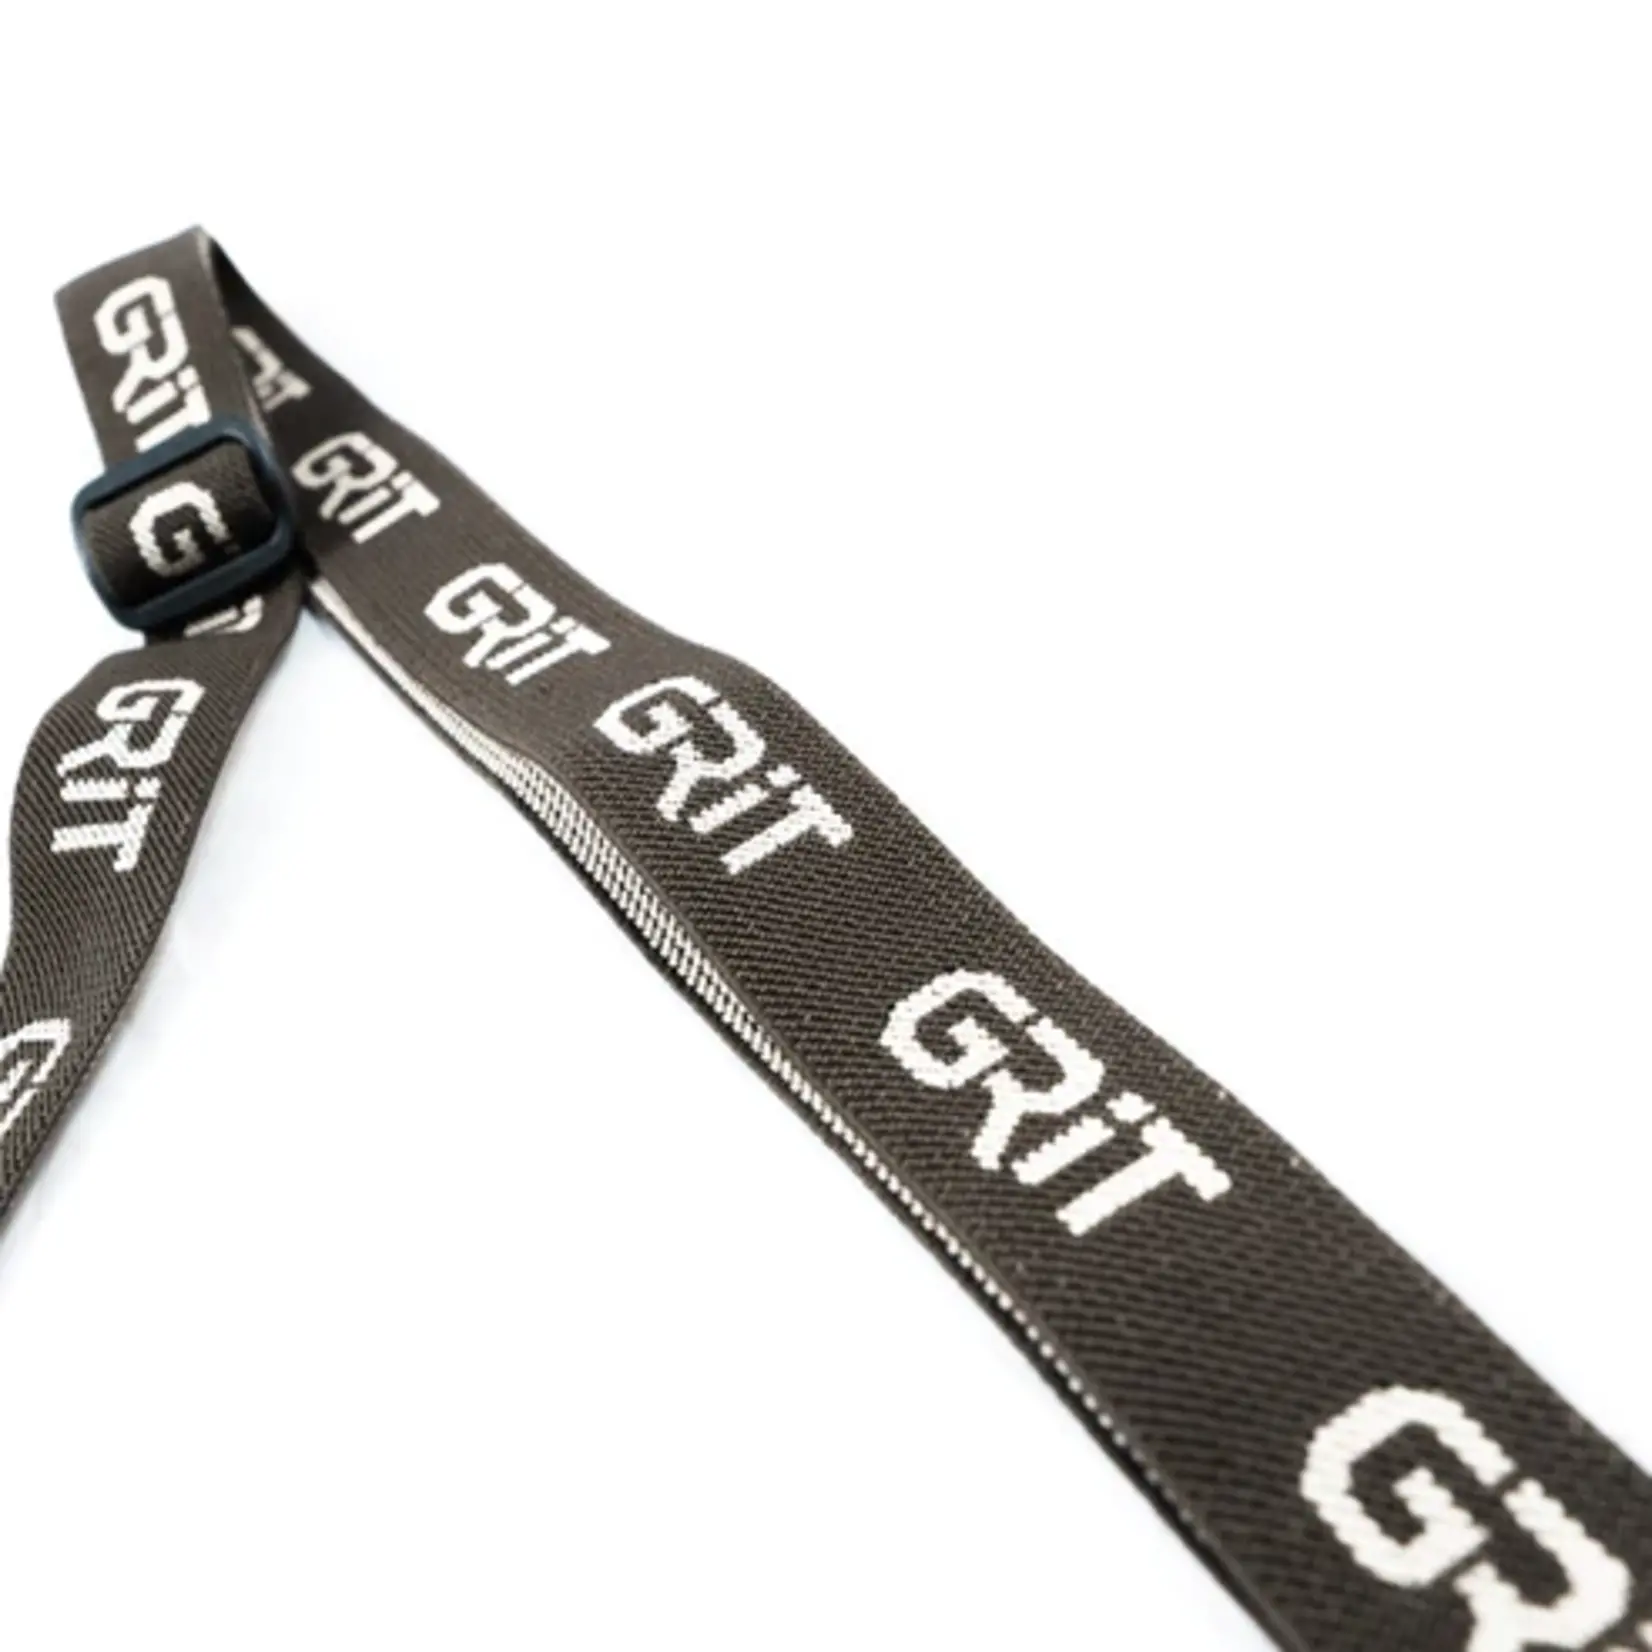 Grit By Tethrd Grit Suspenders